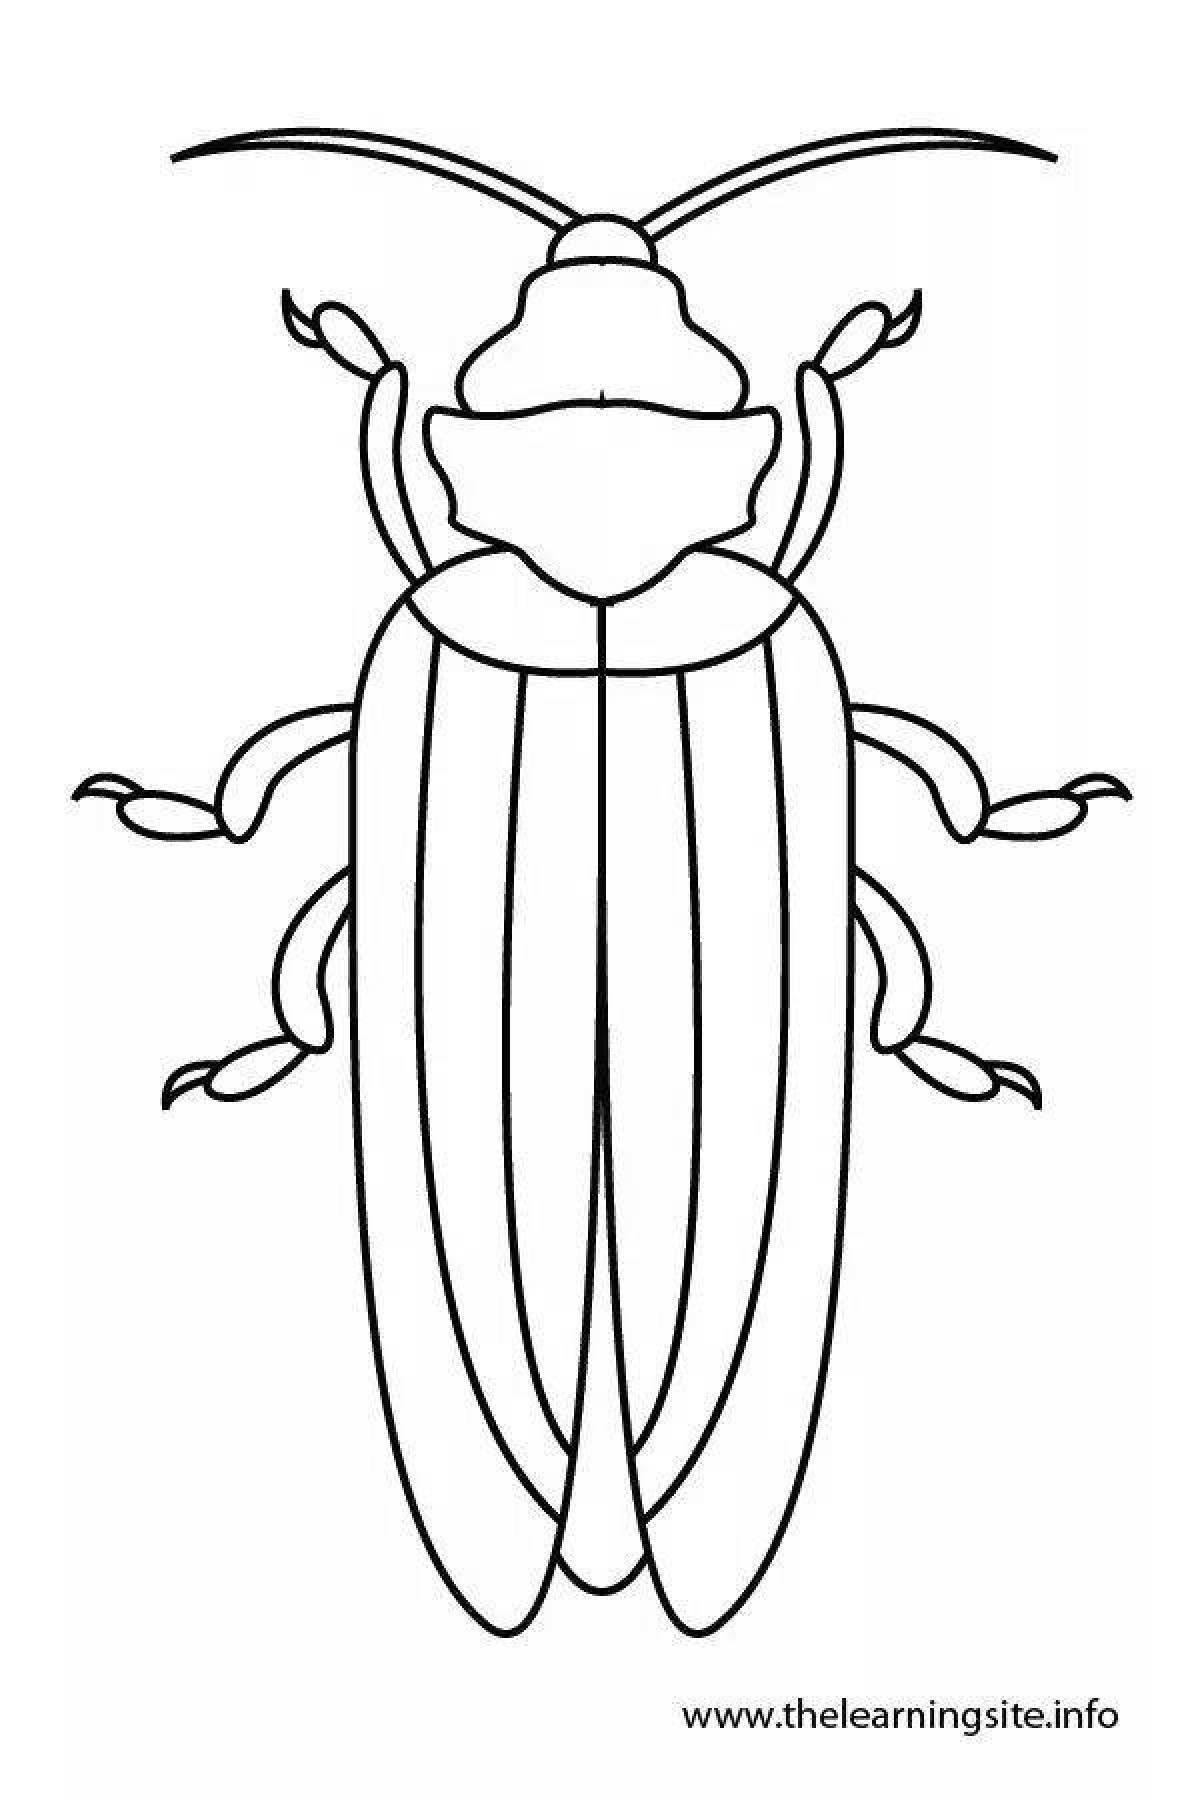 Фото Захватывающая страница раскраски майского жука